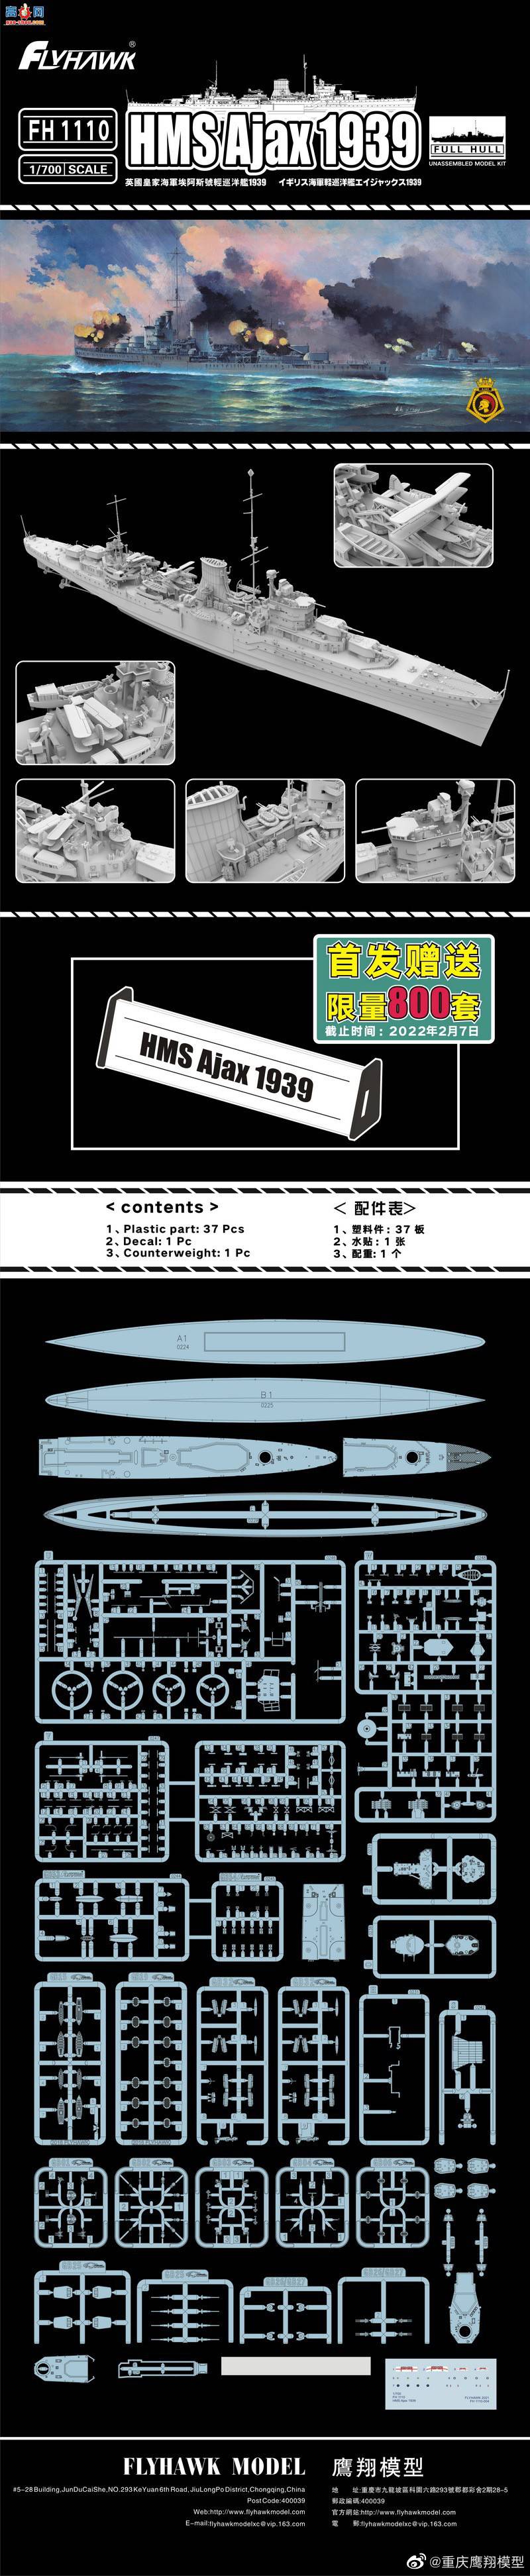 【鹰翔新品】FH1110 - 英国皇家海军埃阿斯号轻巡洋舰1939